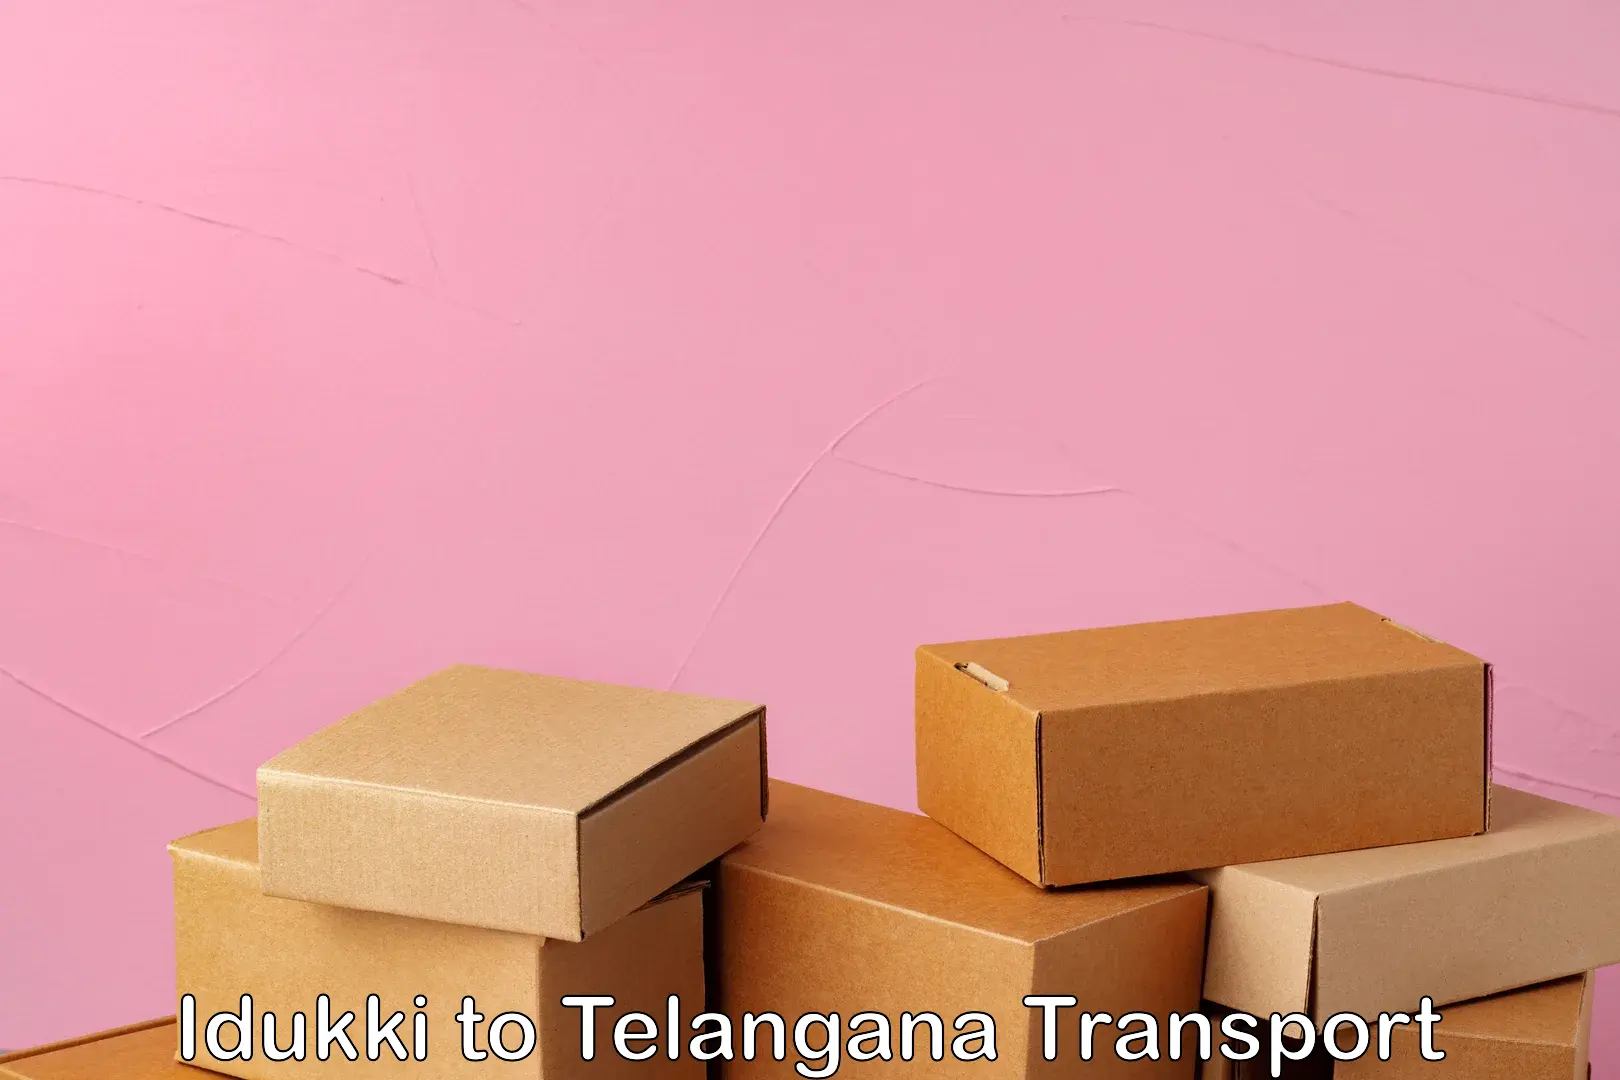 Truck transport companies in India Idukki to Tadoor